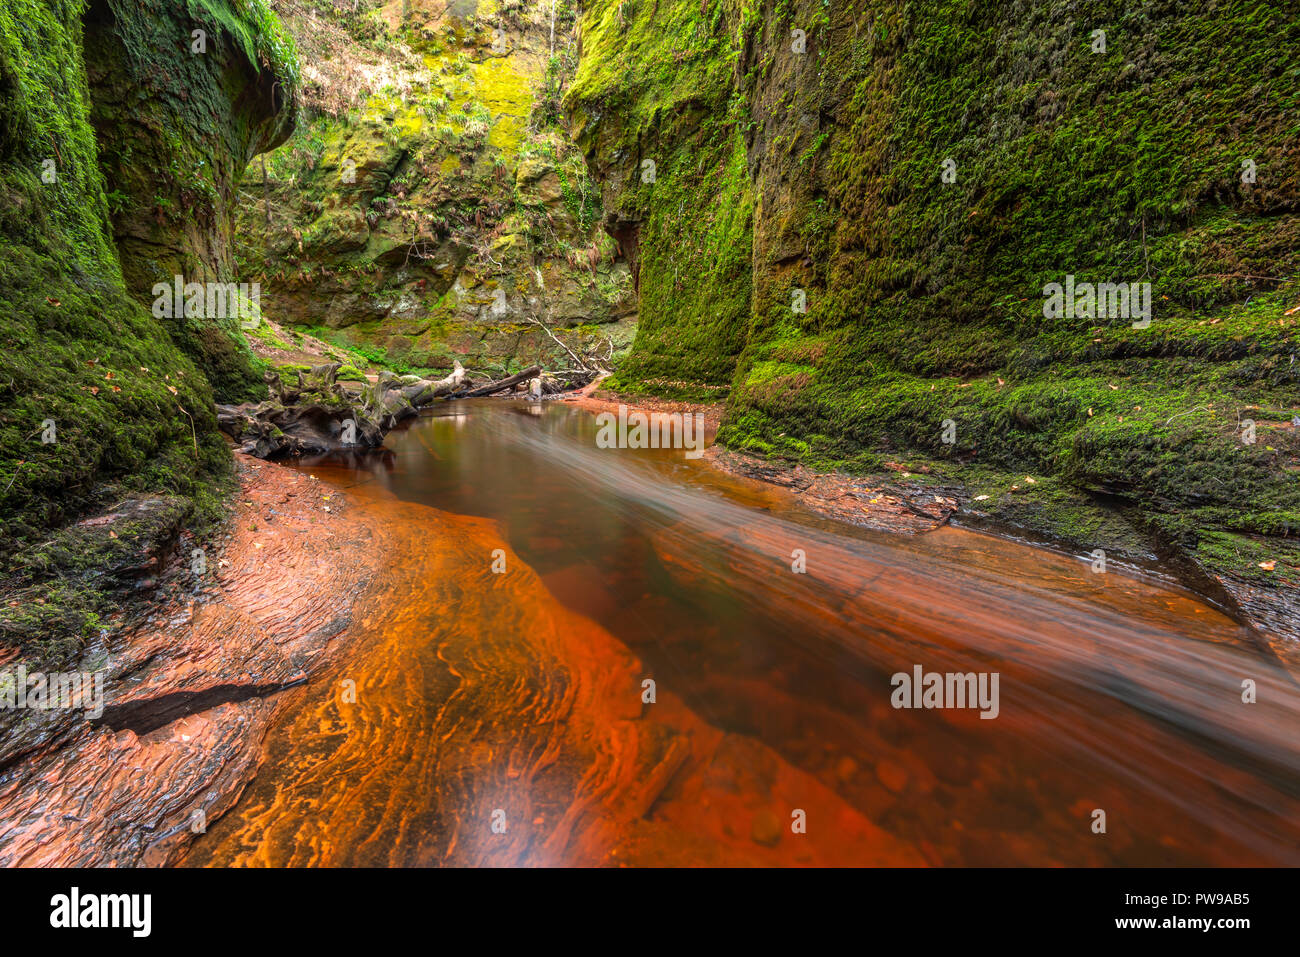 La rivière rouge sang dans une gorge verte. Devil's Pulpit, Finnich Glen, près de Killearn, Ecosse, Royaume-Uni Banque D'Images